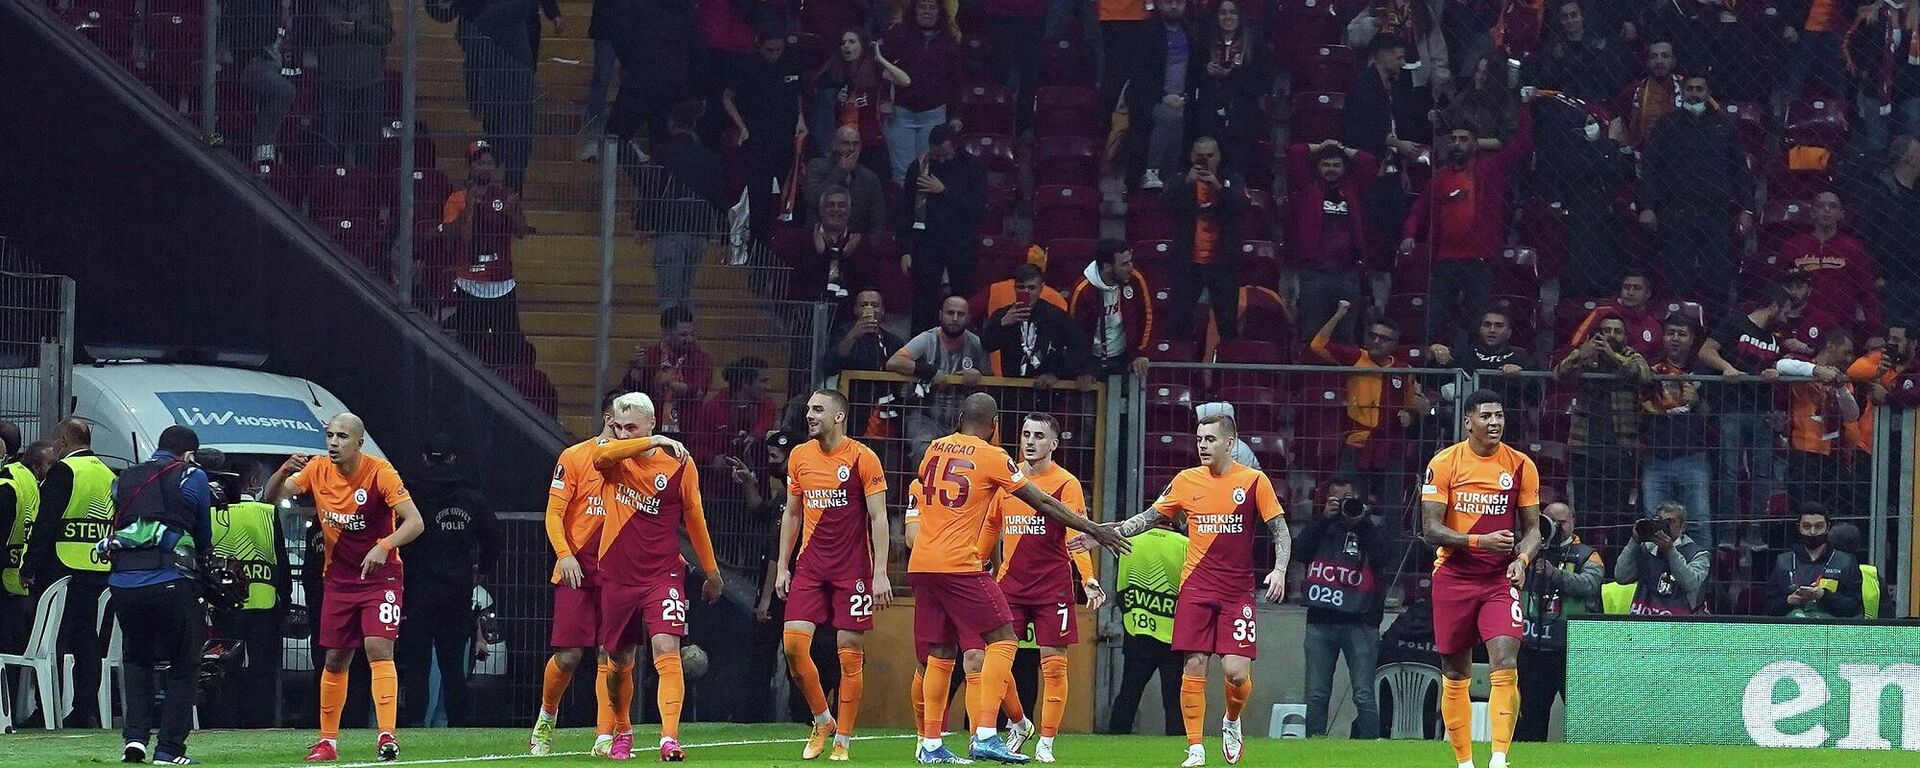 Galatasaray, UEFA Avrupa Ligi E Grubu dördüncü haftasında konuk ettiği Rusya temsilcisi Lokomotiv Moskova ile 1-1 berabere kaldı. - Sputnik Türkiye, 1920, 04.11.2021